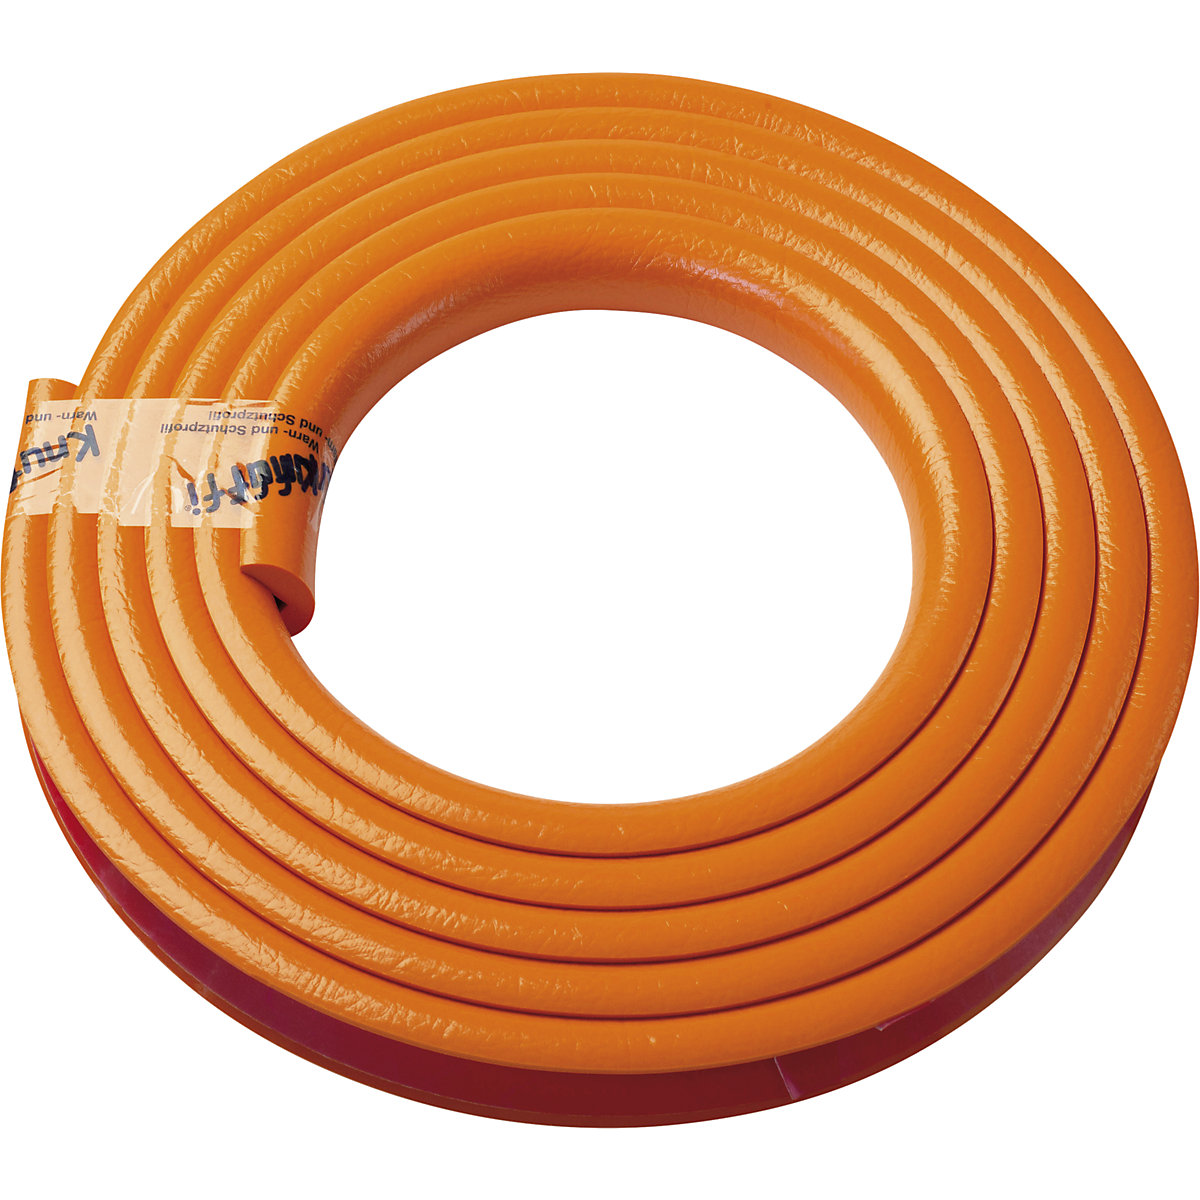 Zaščita vogalov Knuffi® – SHG, tip A, 1 rola po 5 m, oranžne barve-15